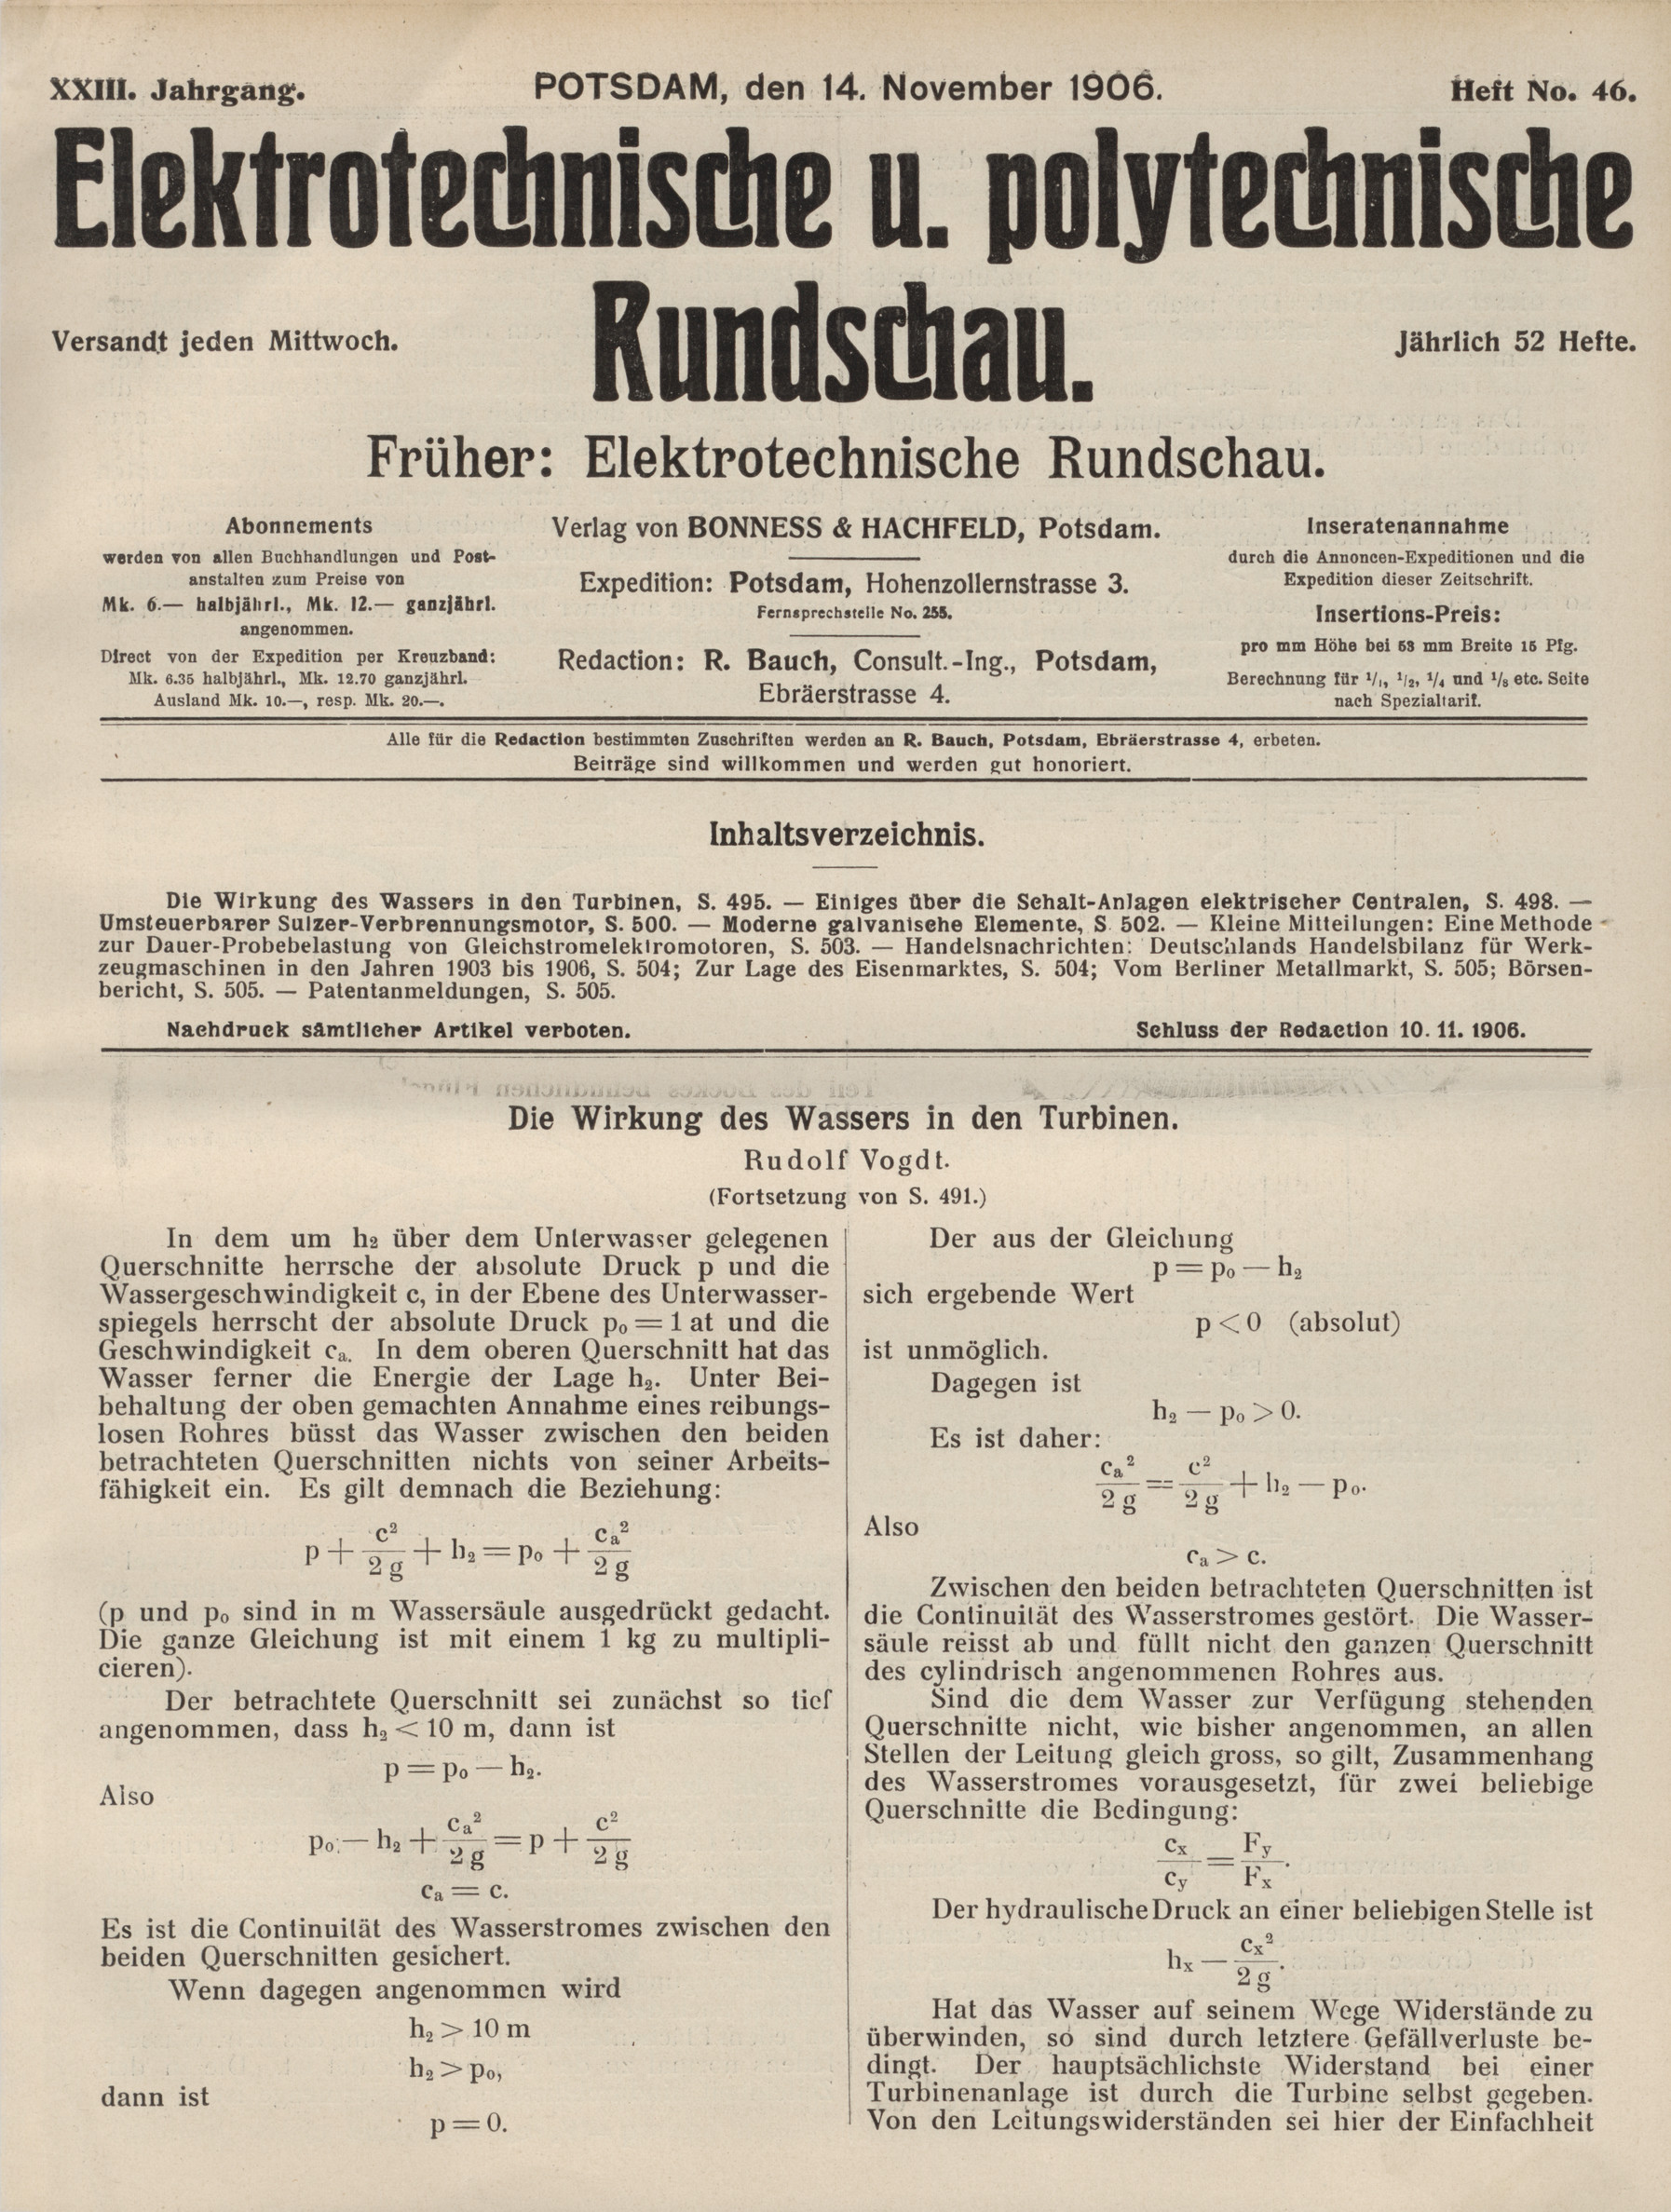 Elektrotechnische und polytechnische Rundschau, XXIII. Jahrgang, Heft No. 46